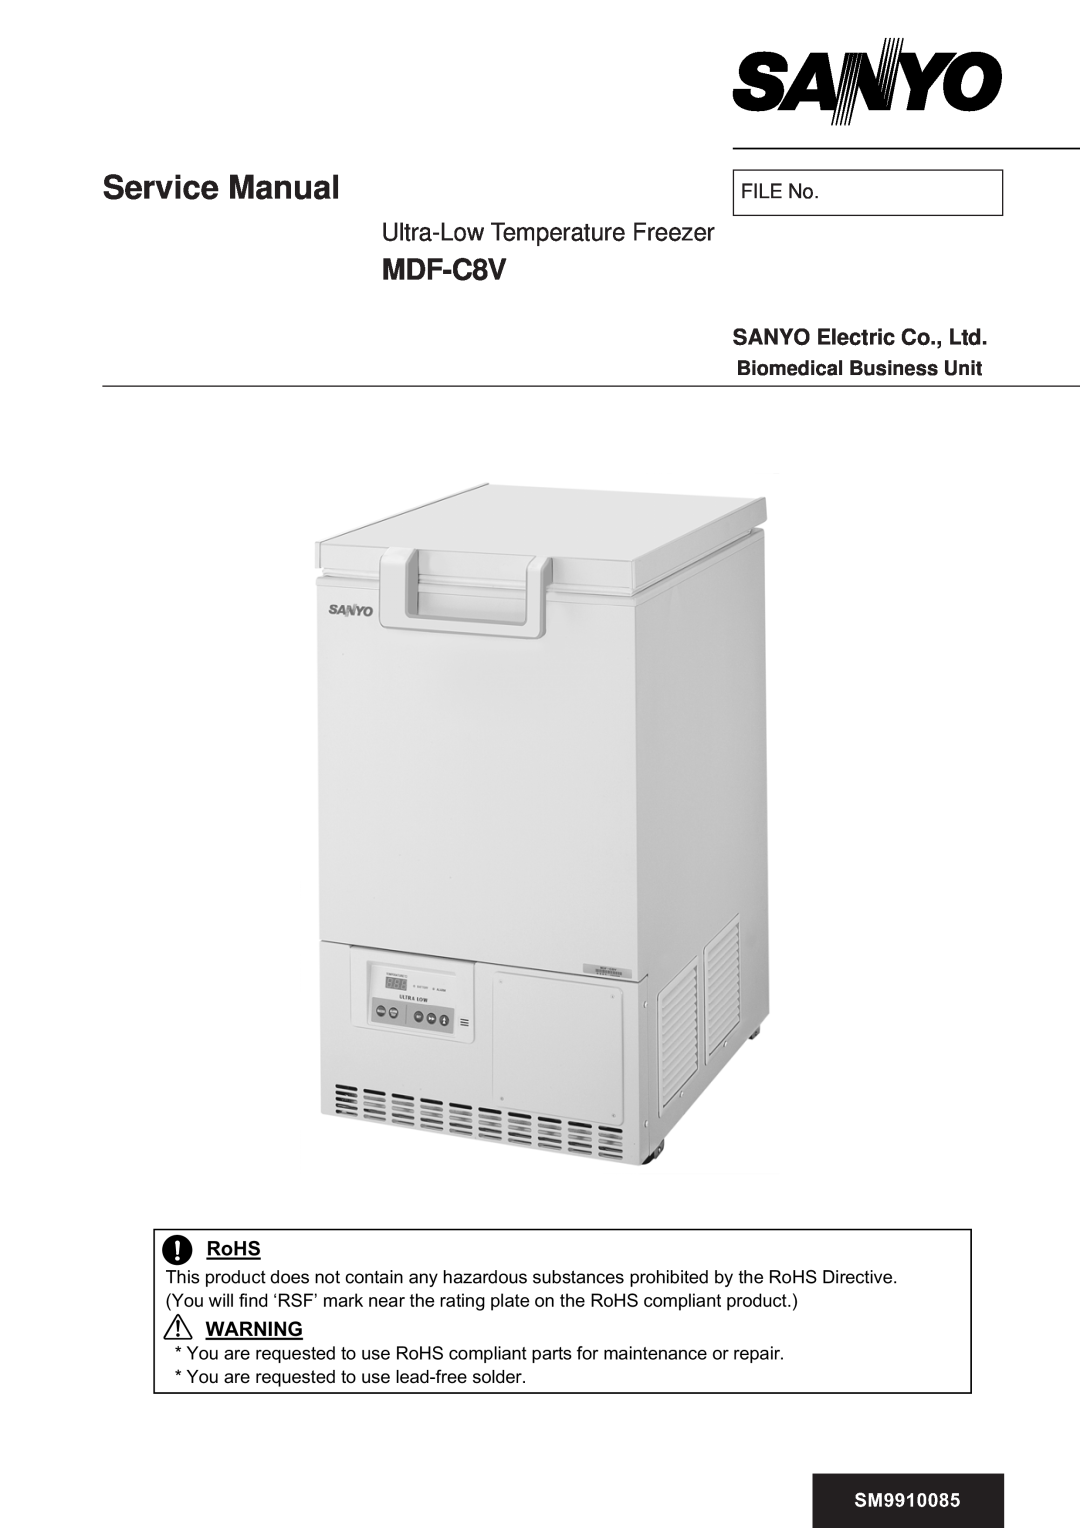 Sanyo manual p r e s e r v a t i o n, 3.0 cu. ft, 42 - 2”, 80C Ultra-LowTemperatureVIP PLUSFreezer - MDF-C8V, Personal 